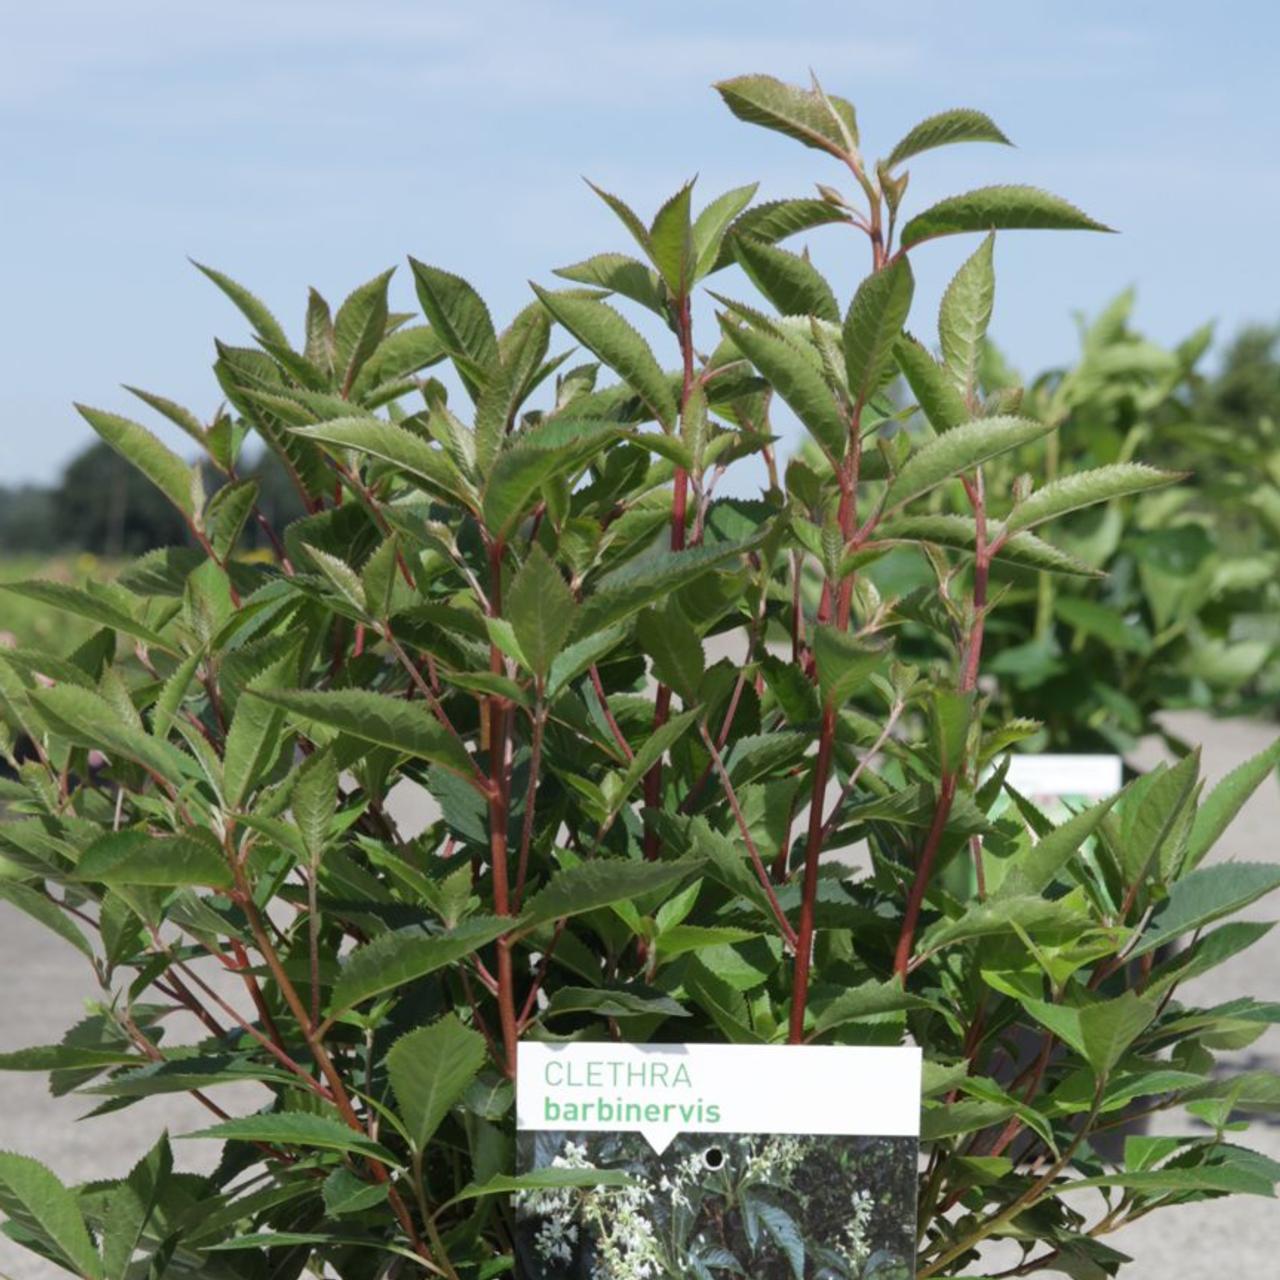 Clethra barbinervis plant